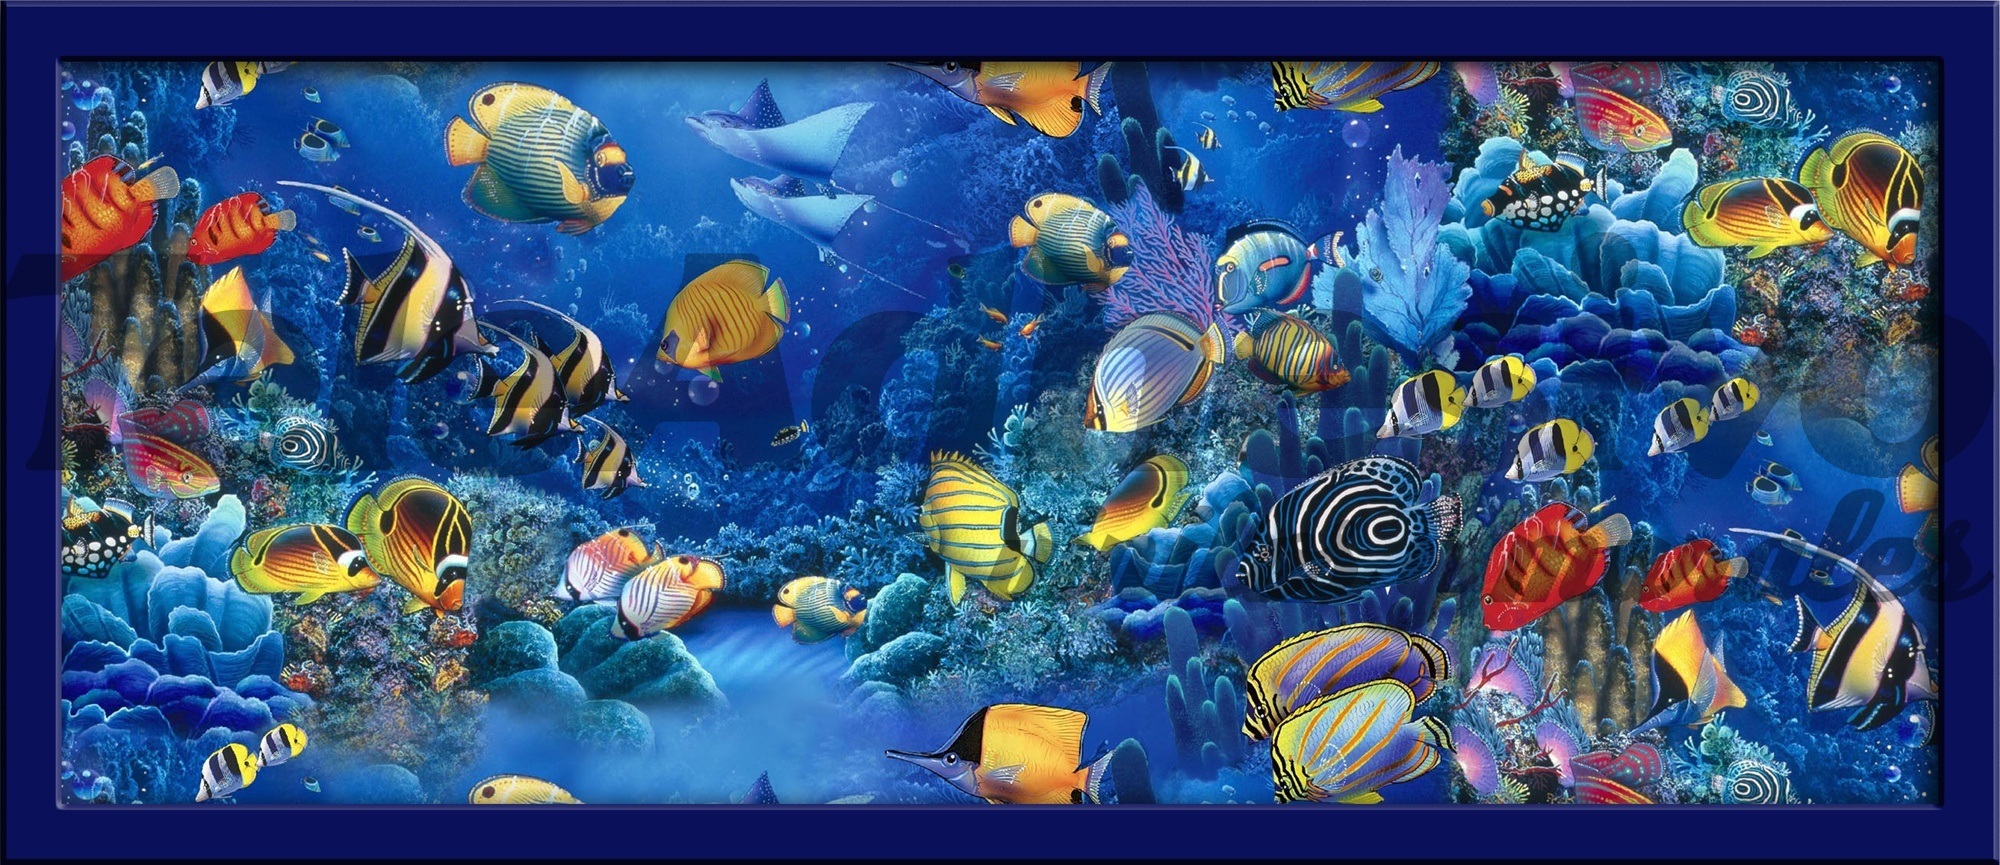 Wandtattoos: Bild Meeresboden